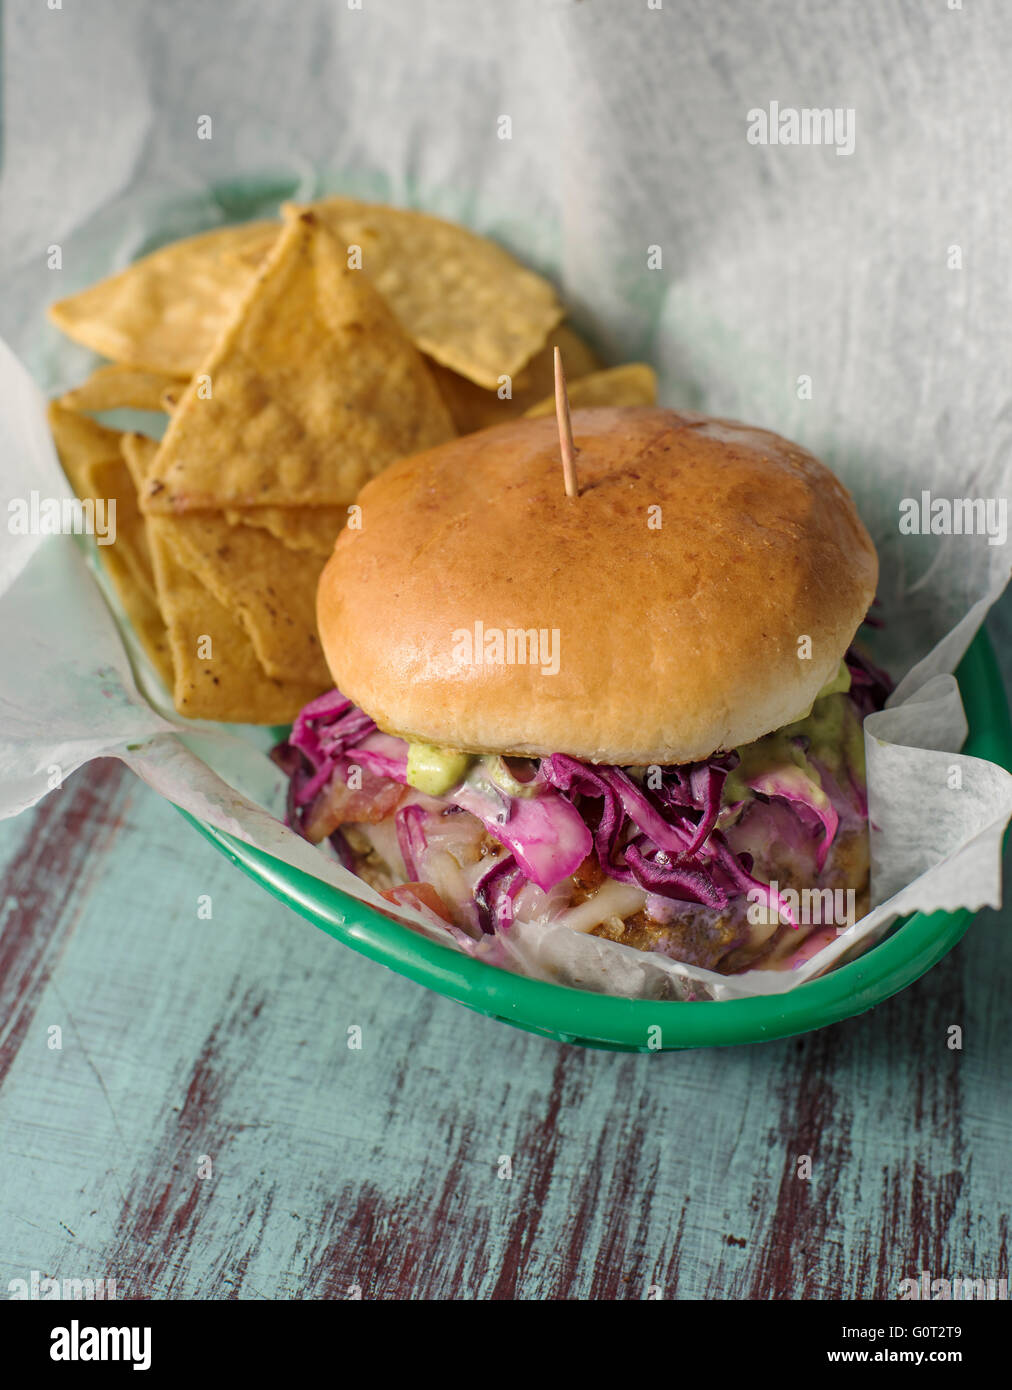 Hamburger ans tortilla chips in un ristorante messicano Foto Stock